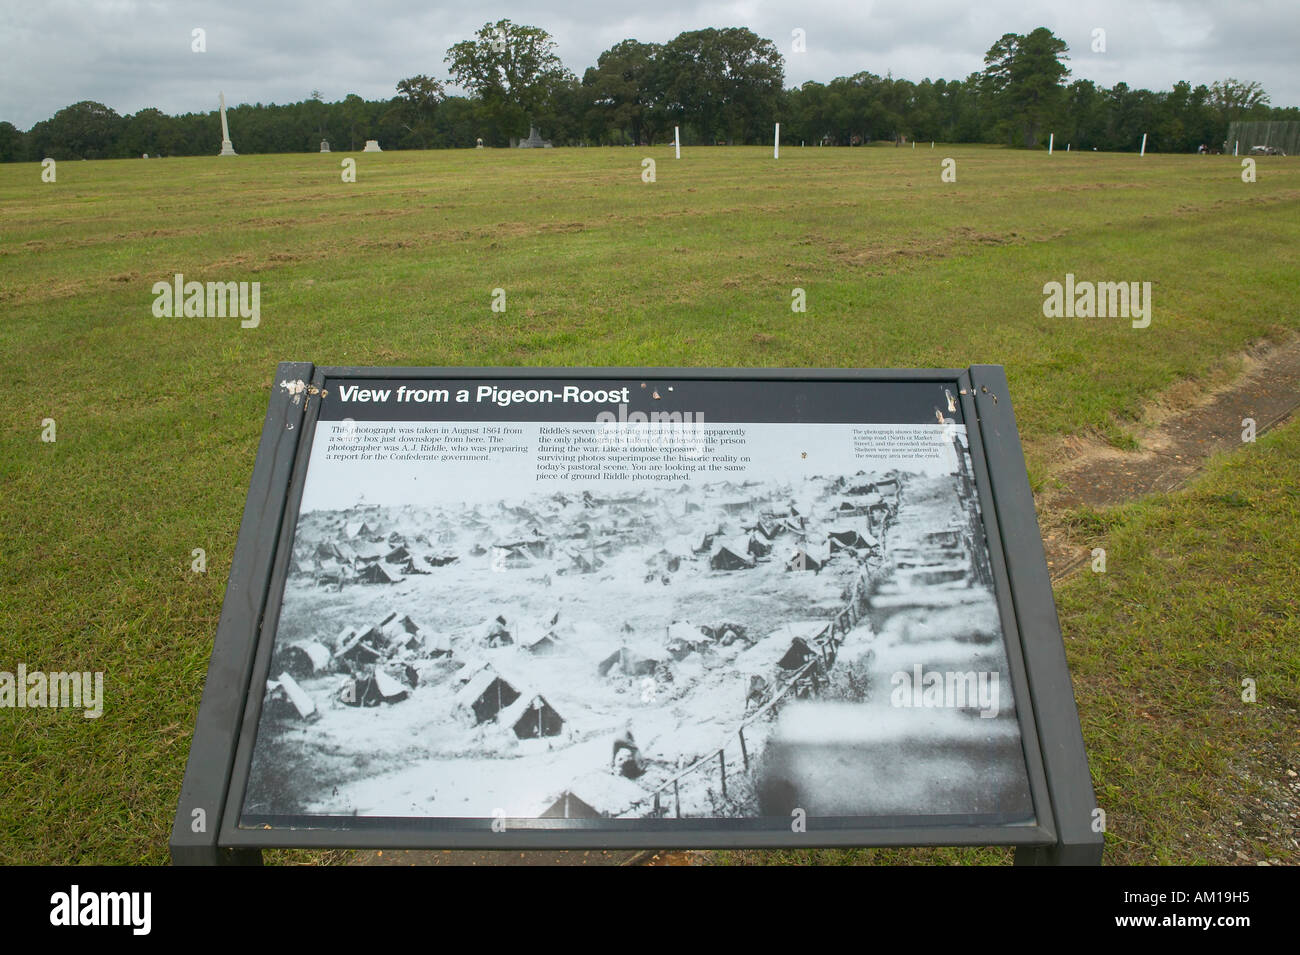 Mappa dei visitatori del Parco Nazionale di Andersonville o Camp Sumter sito di confederato guerra civile il carcere ed il cimitero per unione Yankee Foto Stock